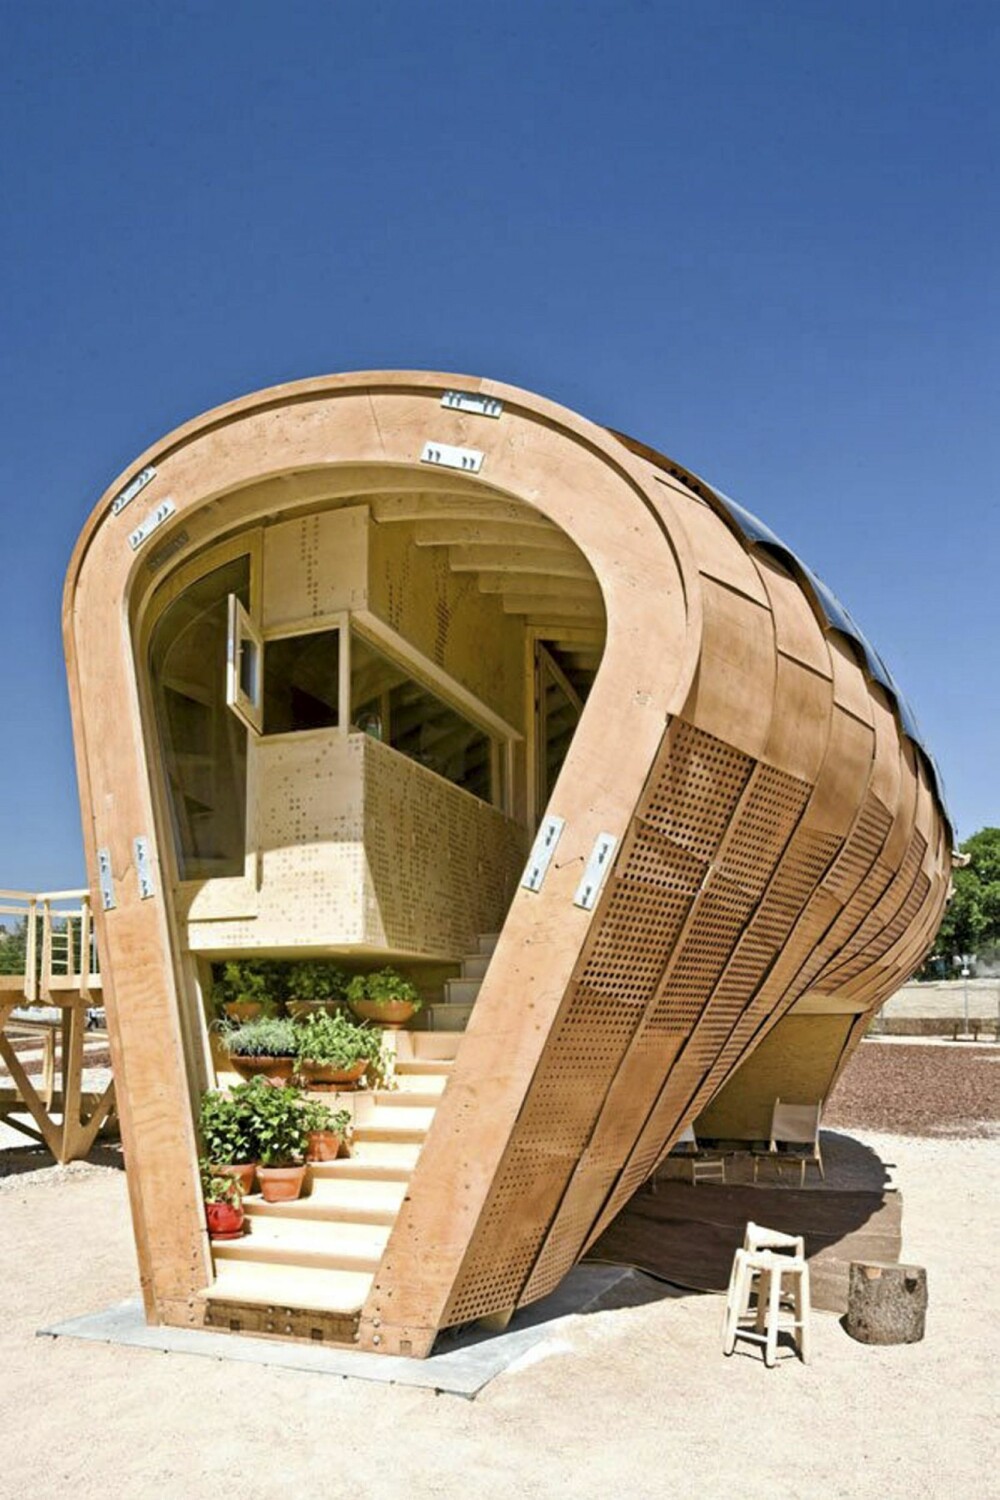 FORMET ETTER FORHOLDENE: Formen på huset er styrt av klimaforholdene. Noen mener huset ser ut som en hval eller en peanøtt.